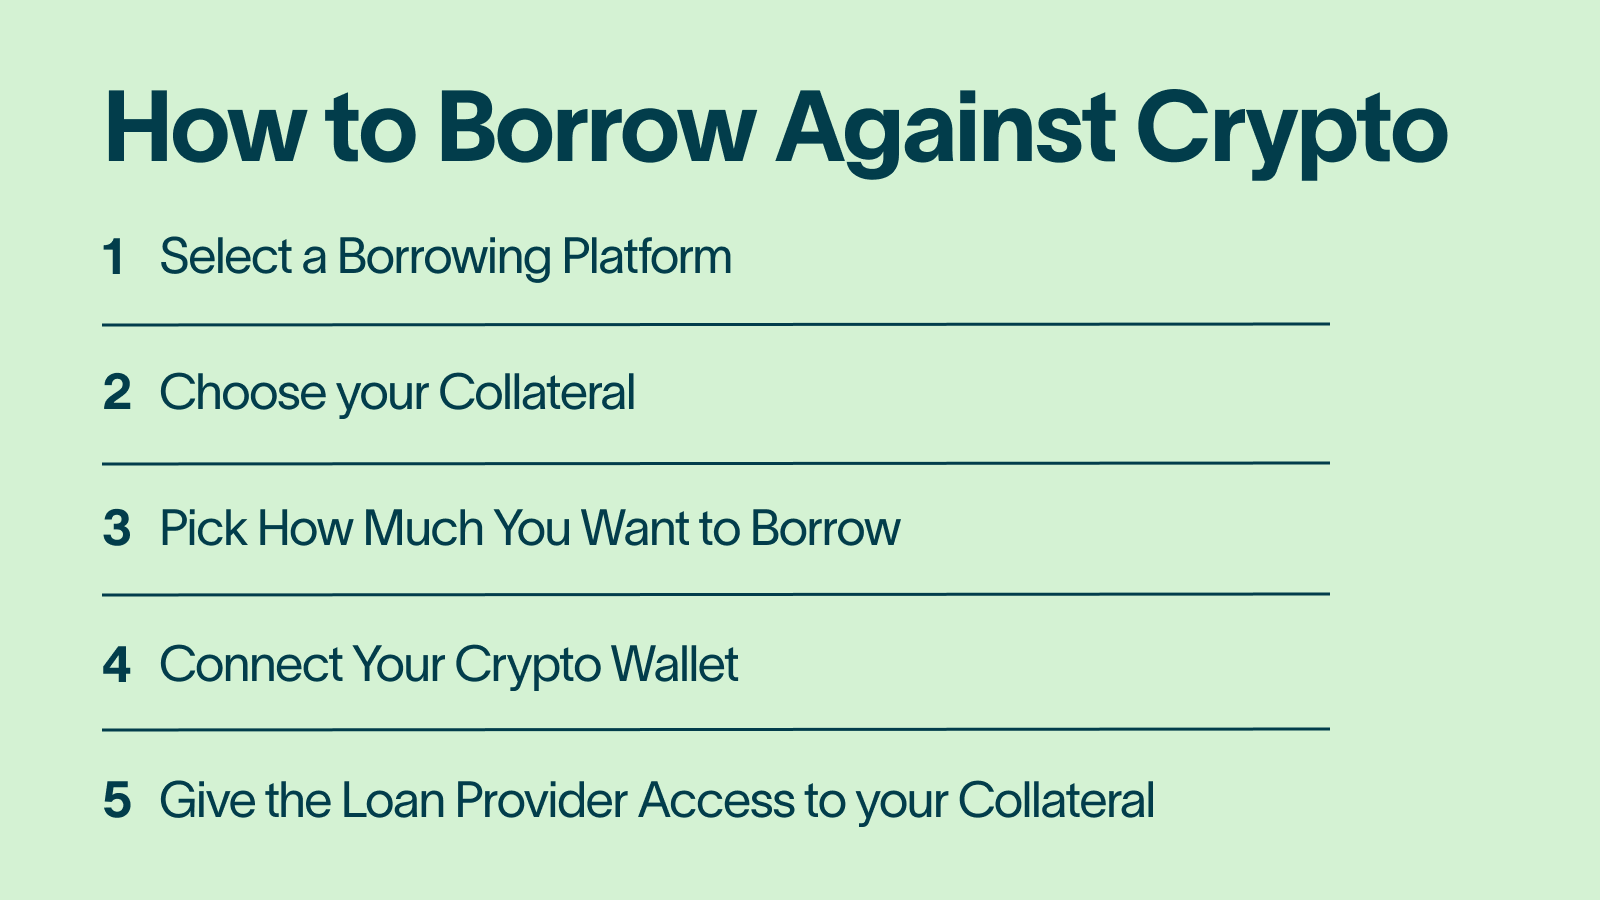 How to Borrow Against Crypto